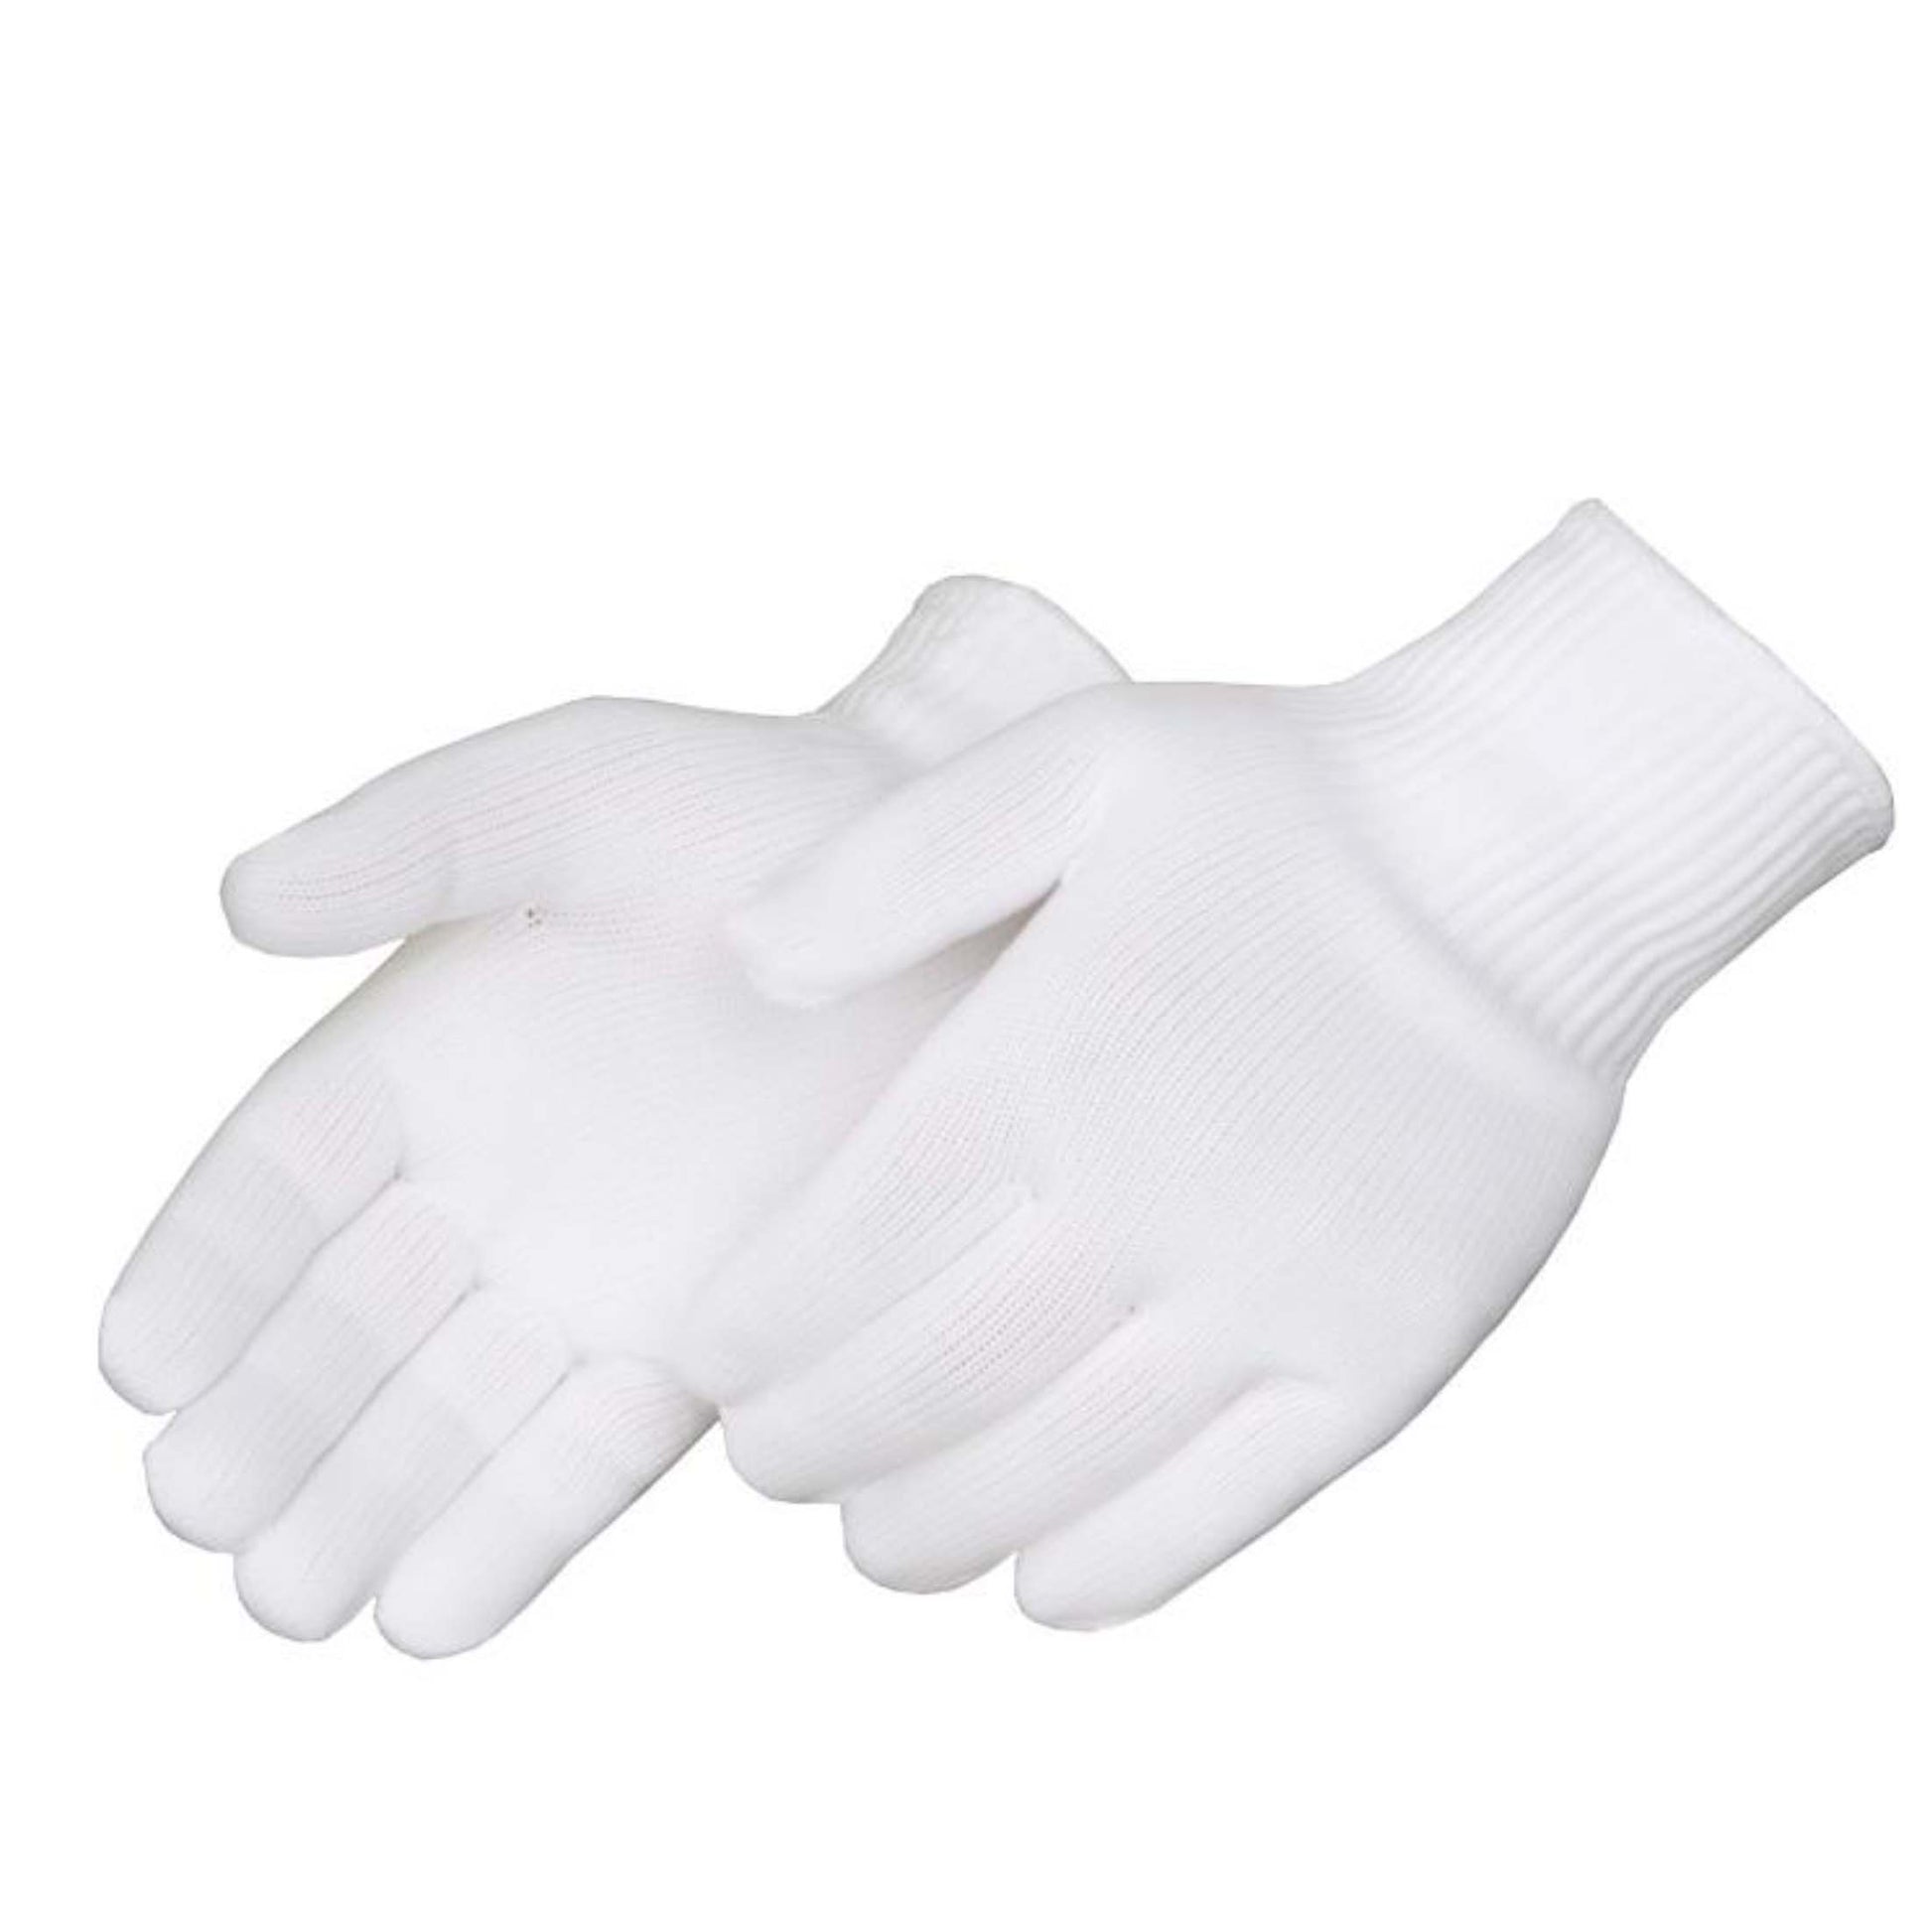  Nylon Knit Gloves 